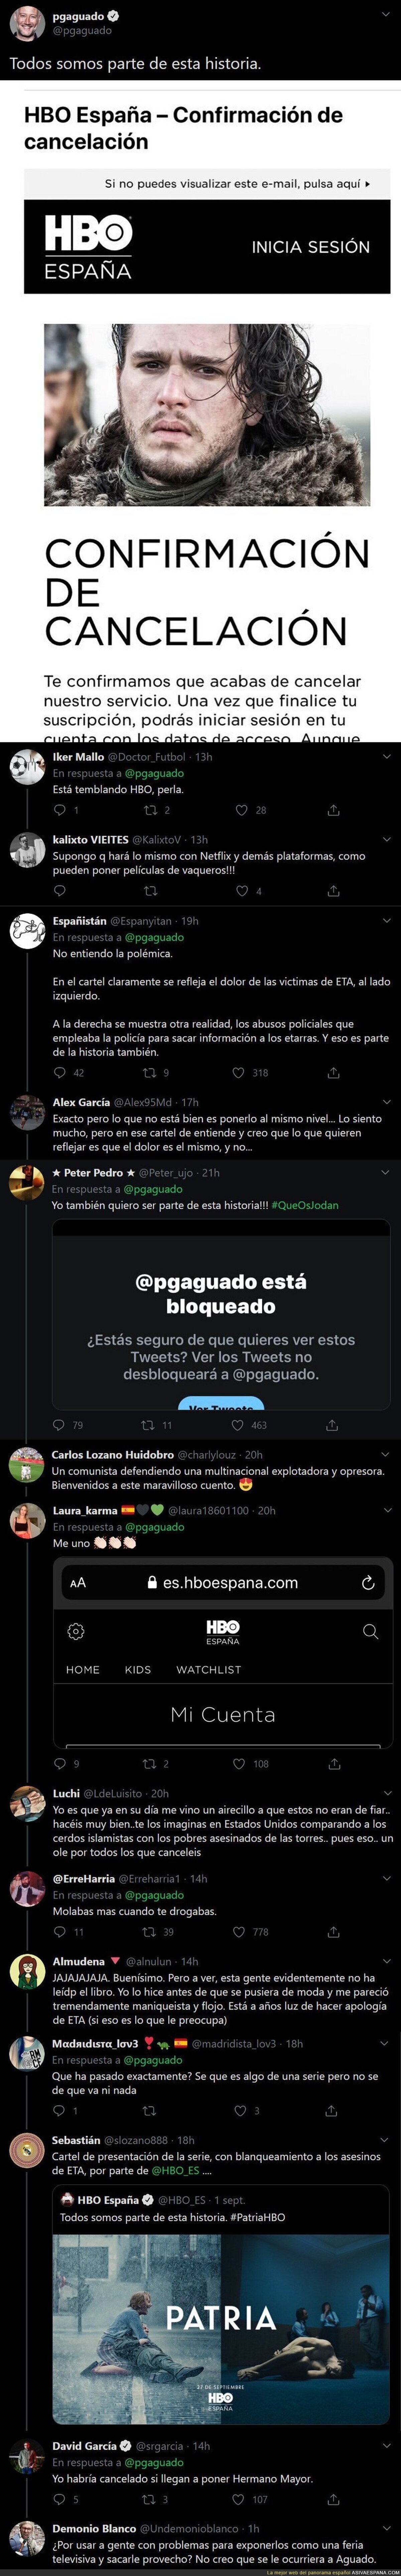 Las respuestas a Pedro García Aguado tras anunciar que se da de baja de HBO por el 'polémico' cartel de la serie PATRIA